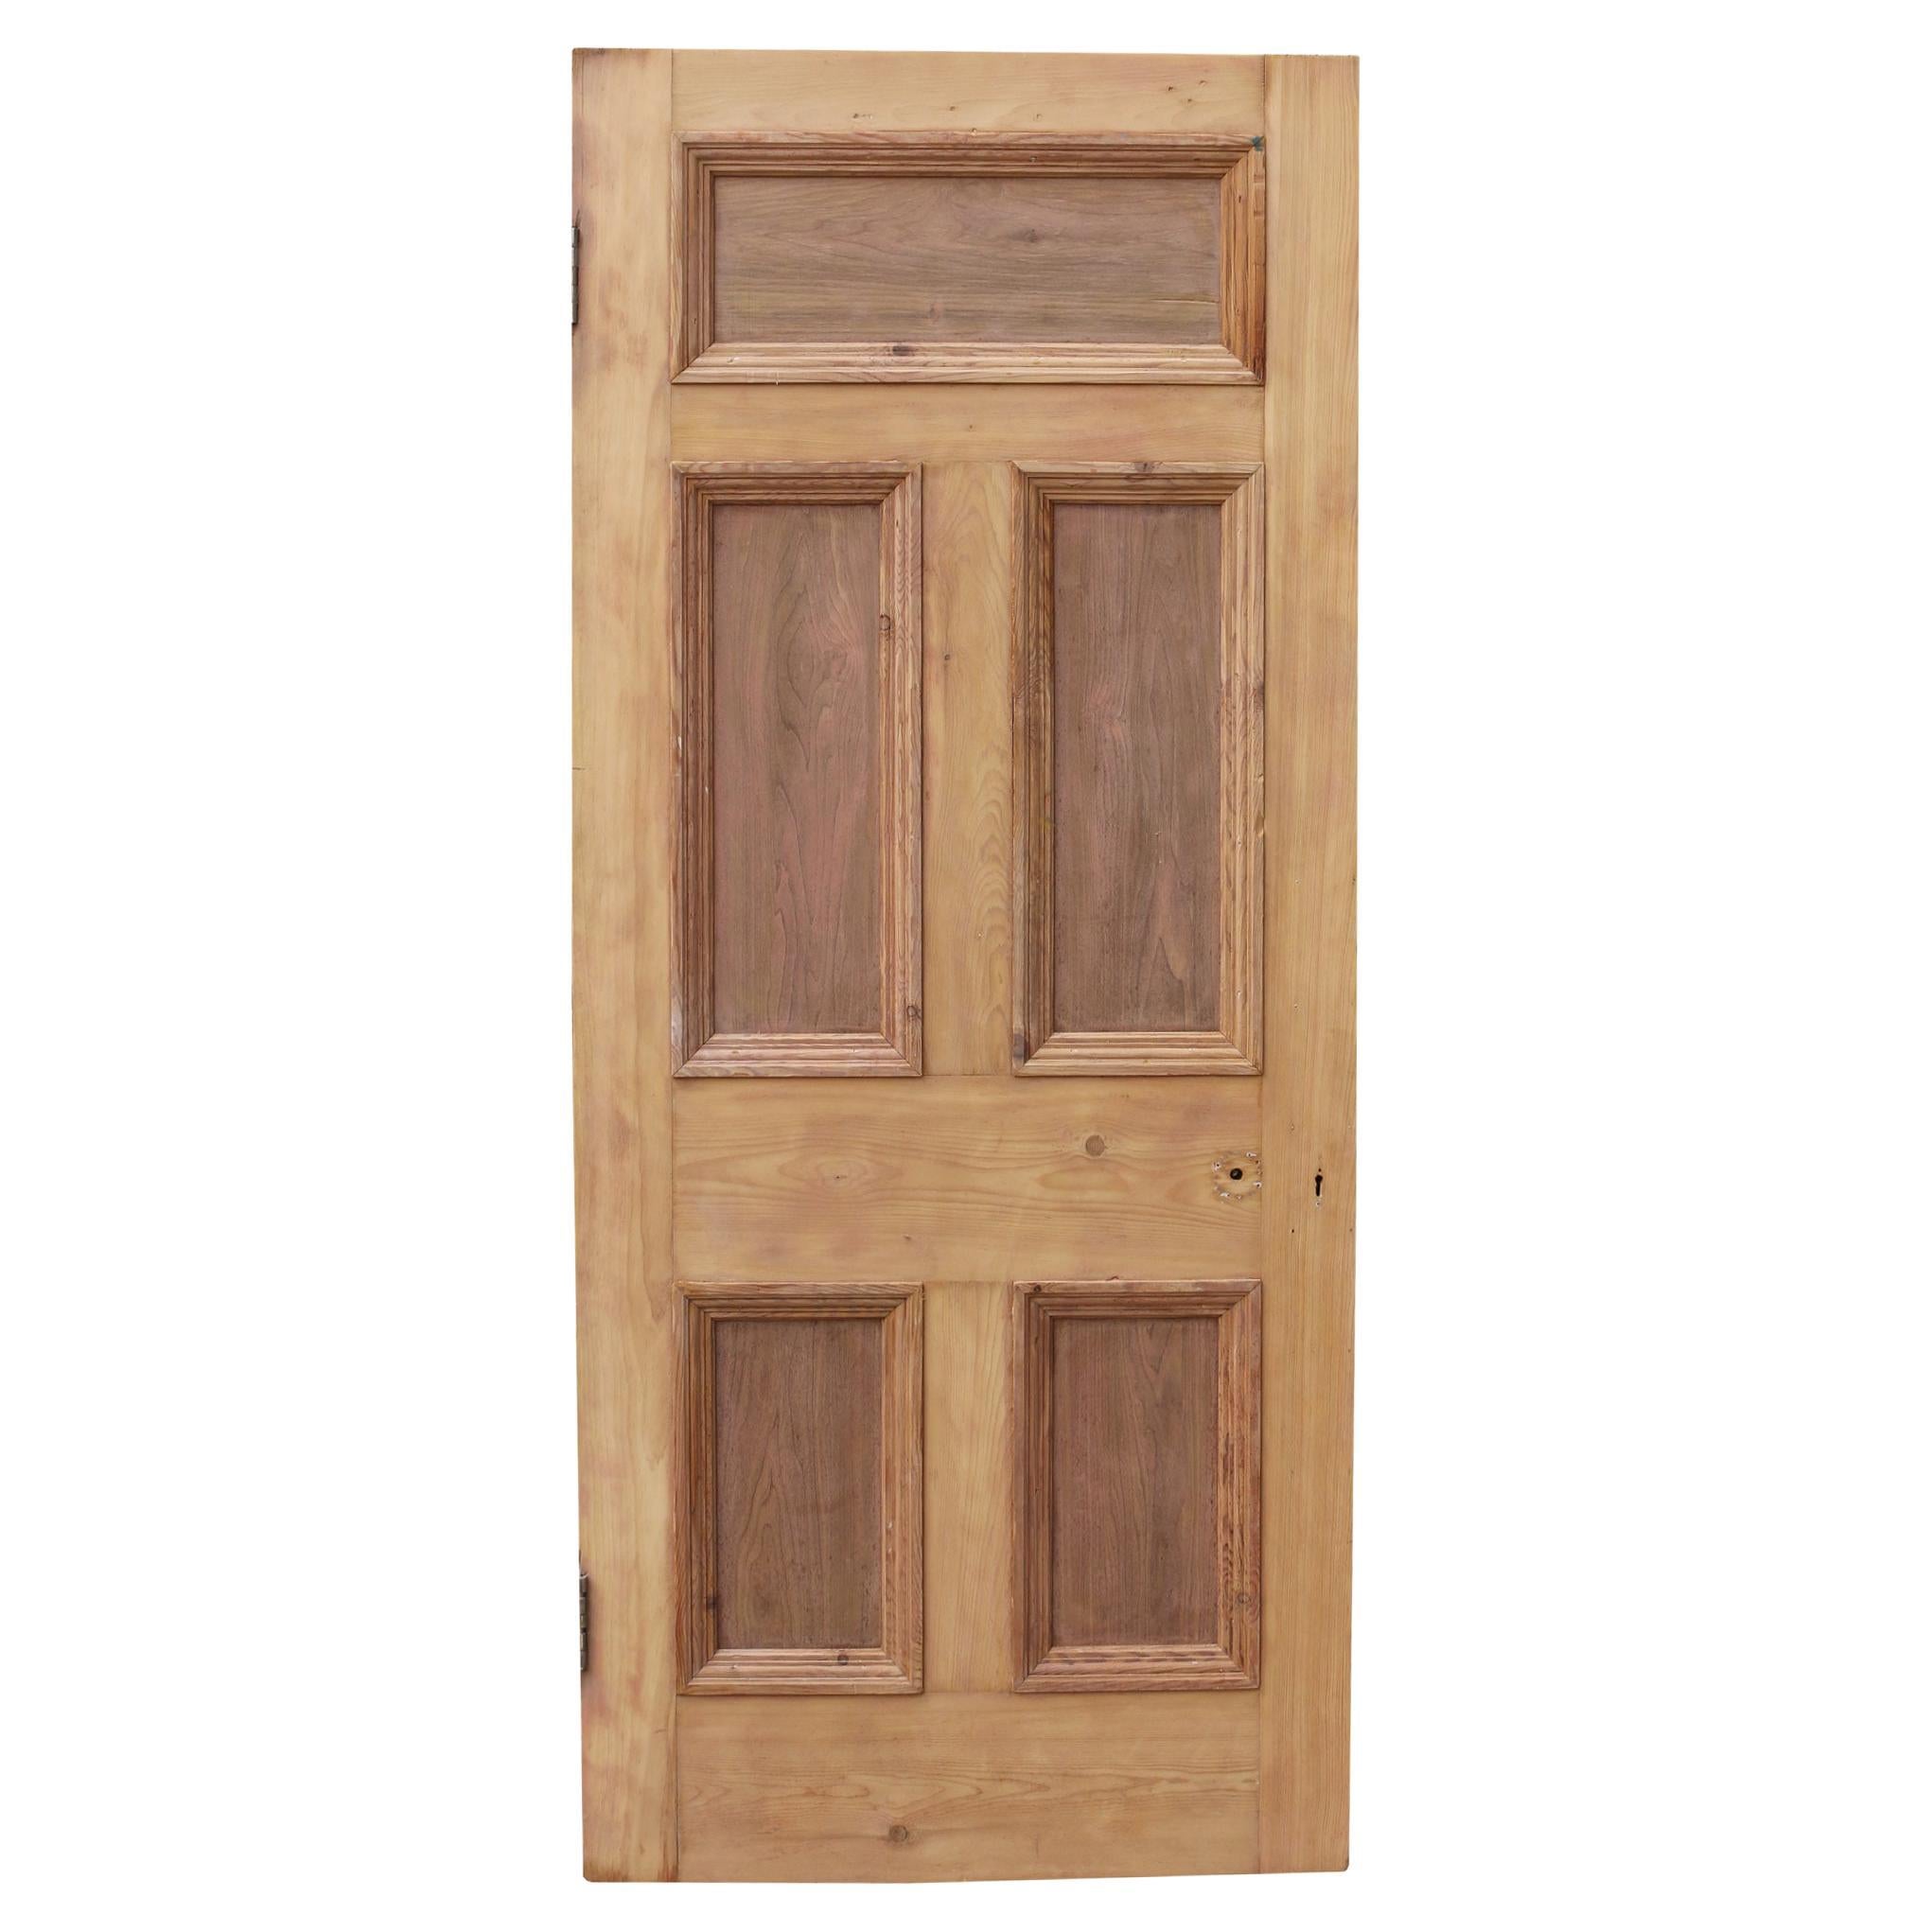 Antique Exterior Five Panel Pine Door For Sale